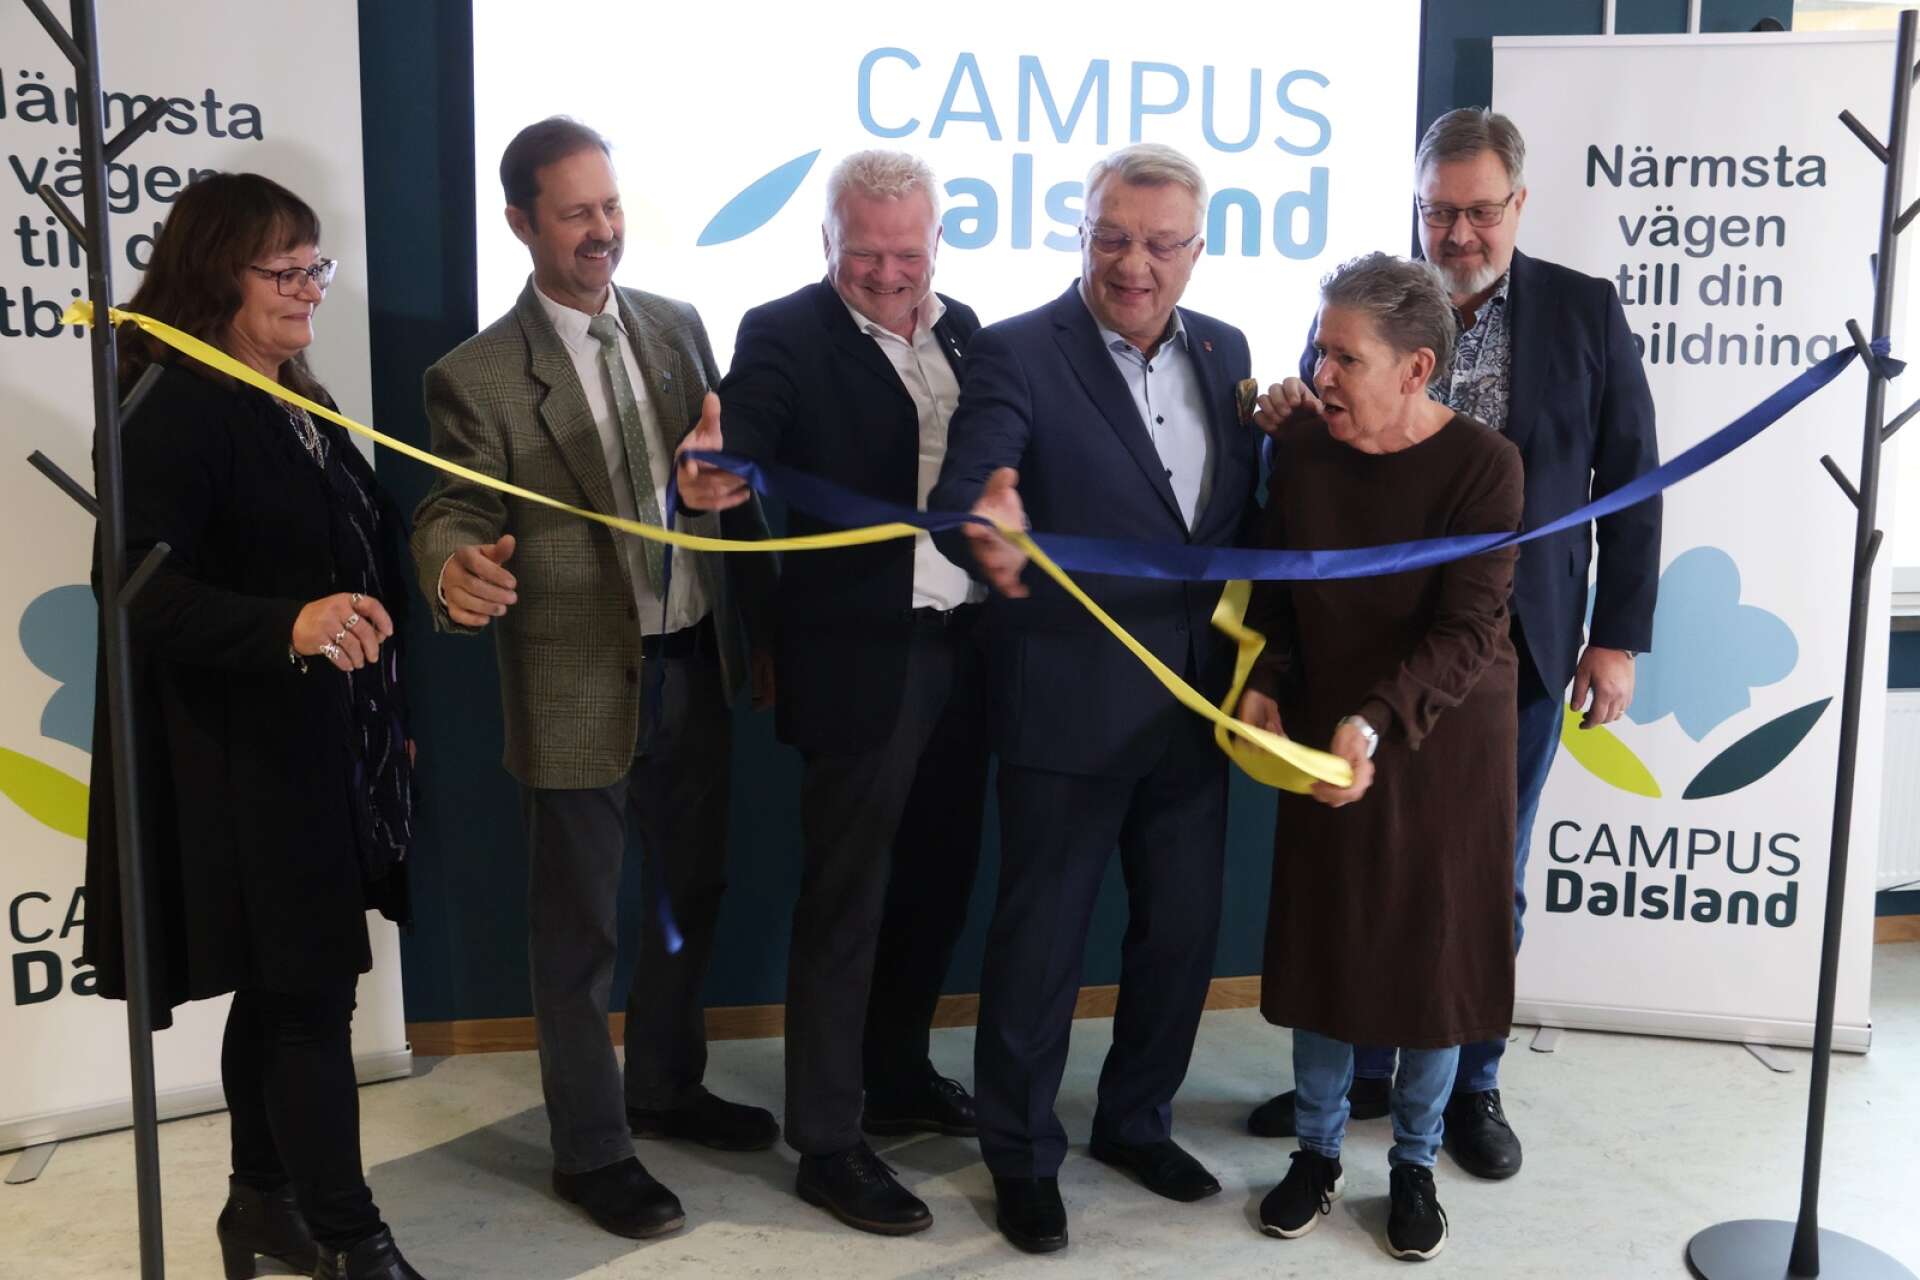 Dalslands kommunalråd och toppolitiker lossade gemensamt på den blågula rosetten och därmed var Campus Dalsland invigt.